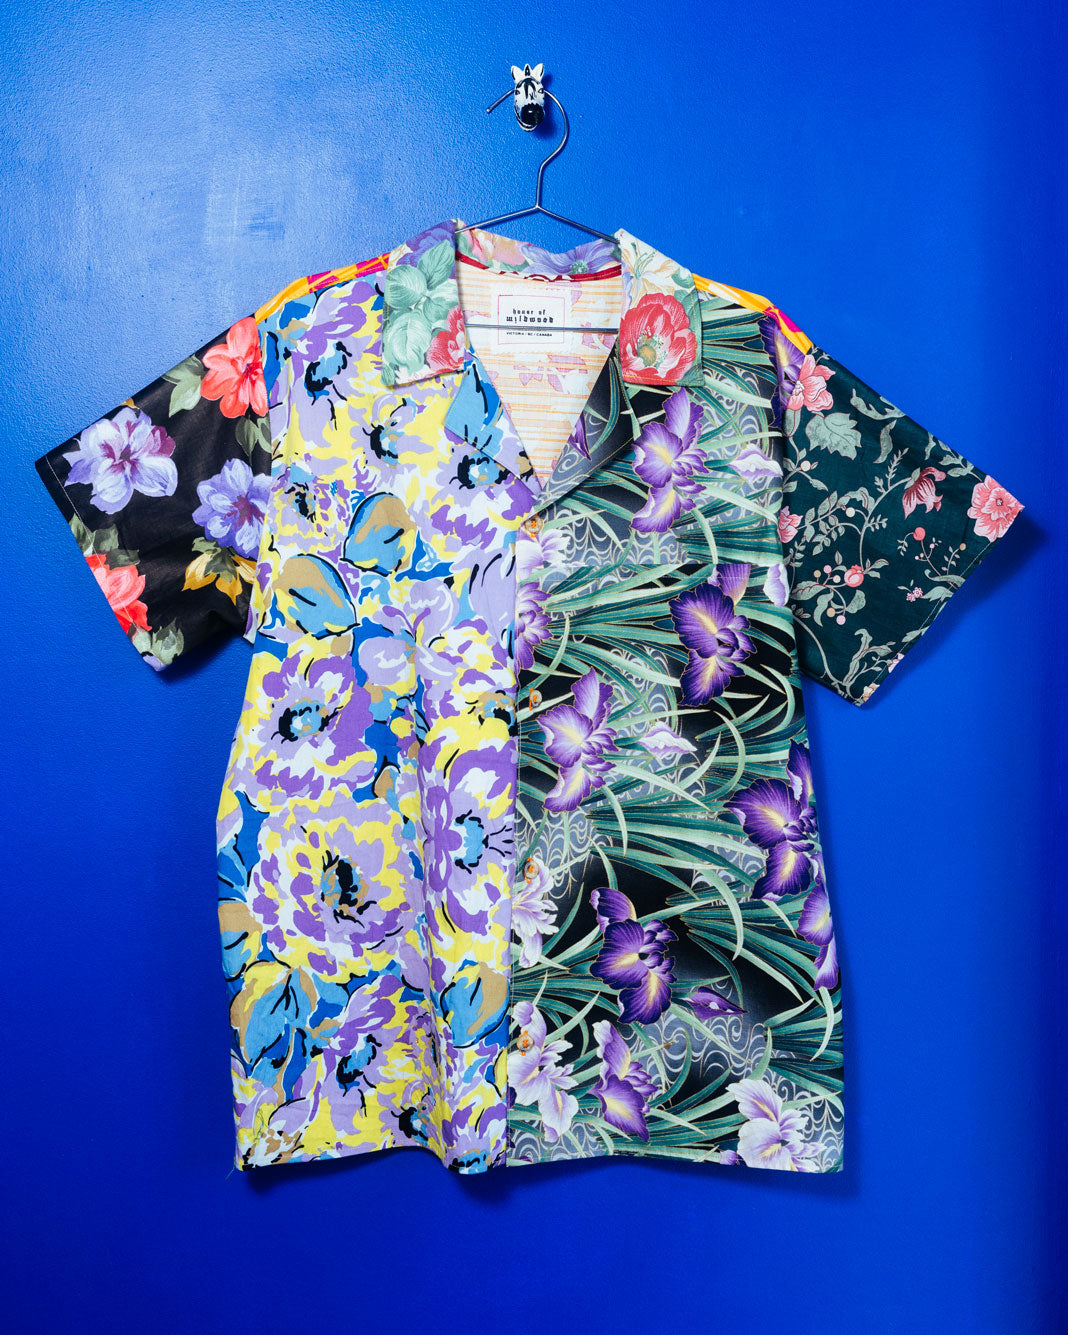 Mix + Match Floral Unisex Cuban Shirt